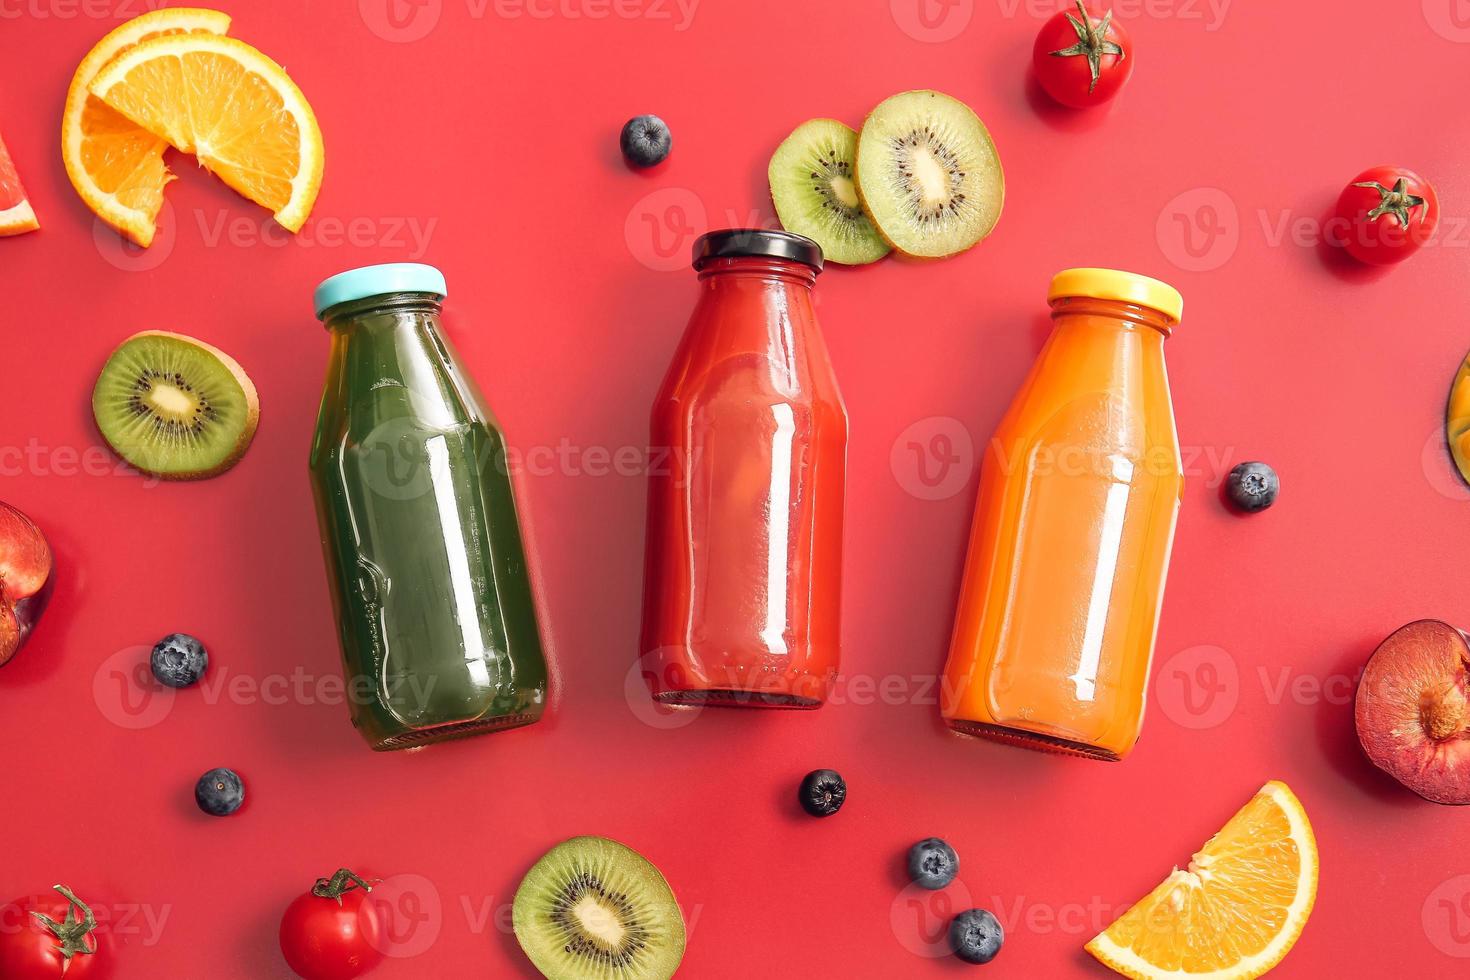 Flaschen mit gesundem Saft, Obst und Gemüse auf farbigem Hintergrund foto